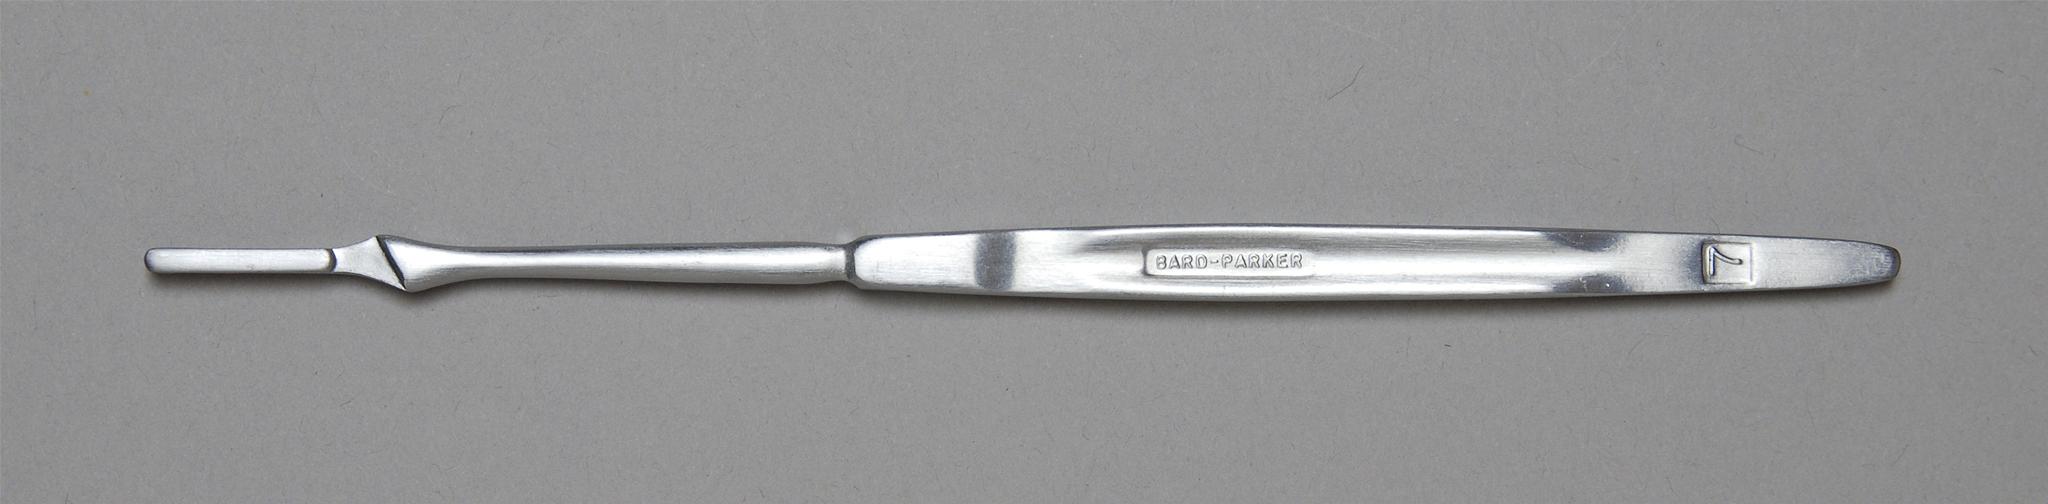 Aspen Bard-Parker Surgical Blade Handles Case 371070 By Aspen Sur